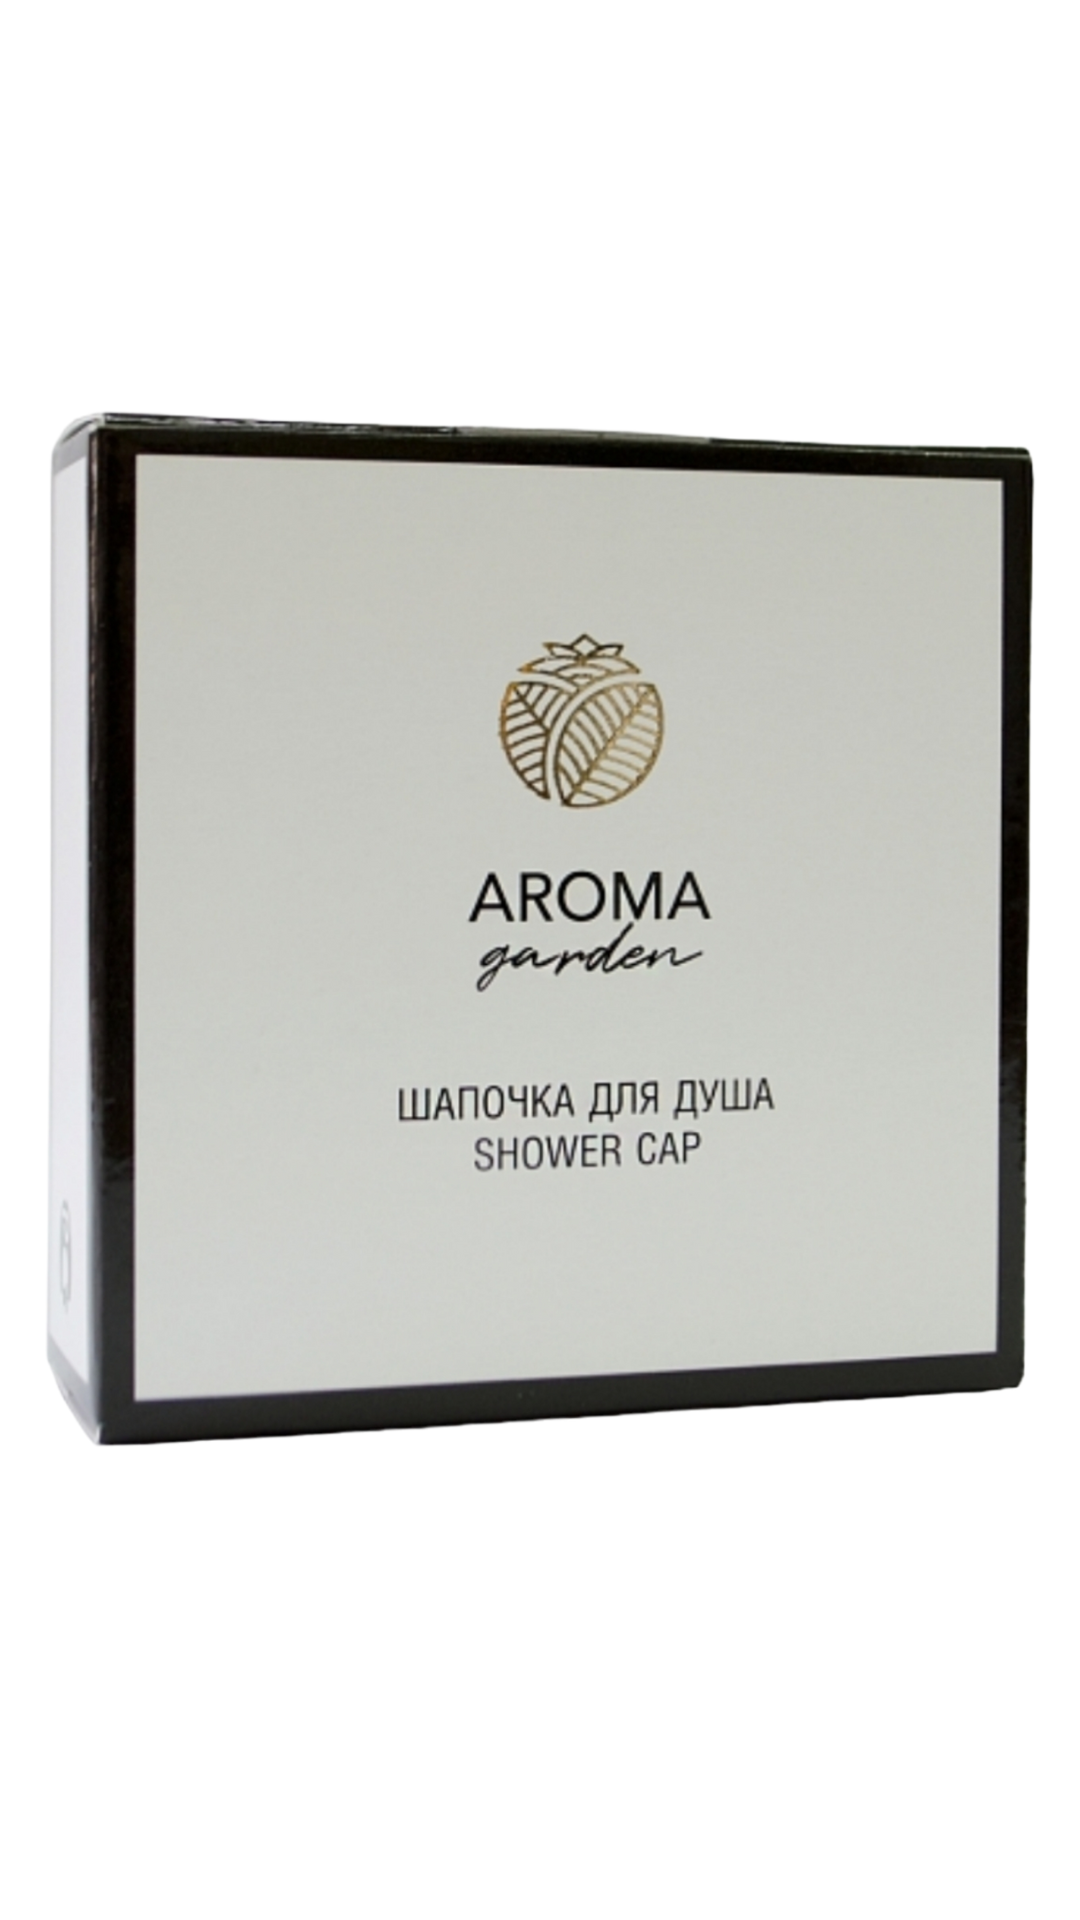 Шапочки для душа Aroma Garden картон 250 шт. шапочки для душа hotel s бумажная уп аковка 50 шт